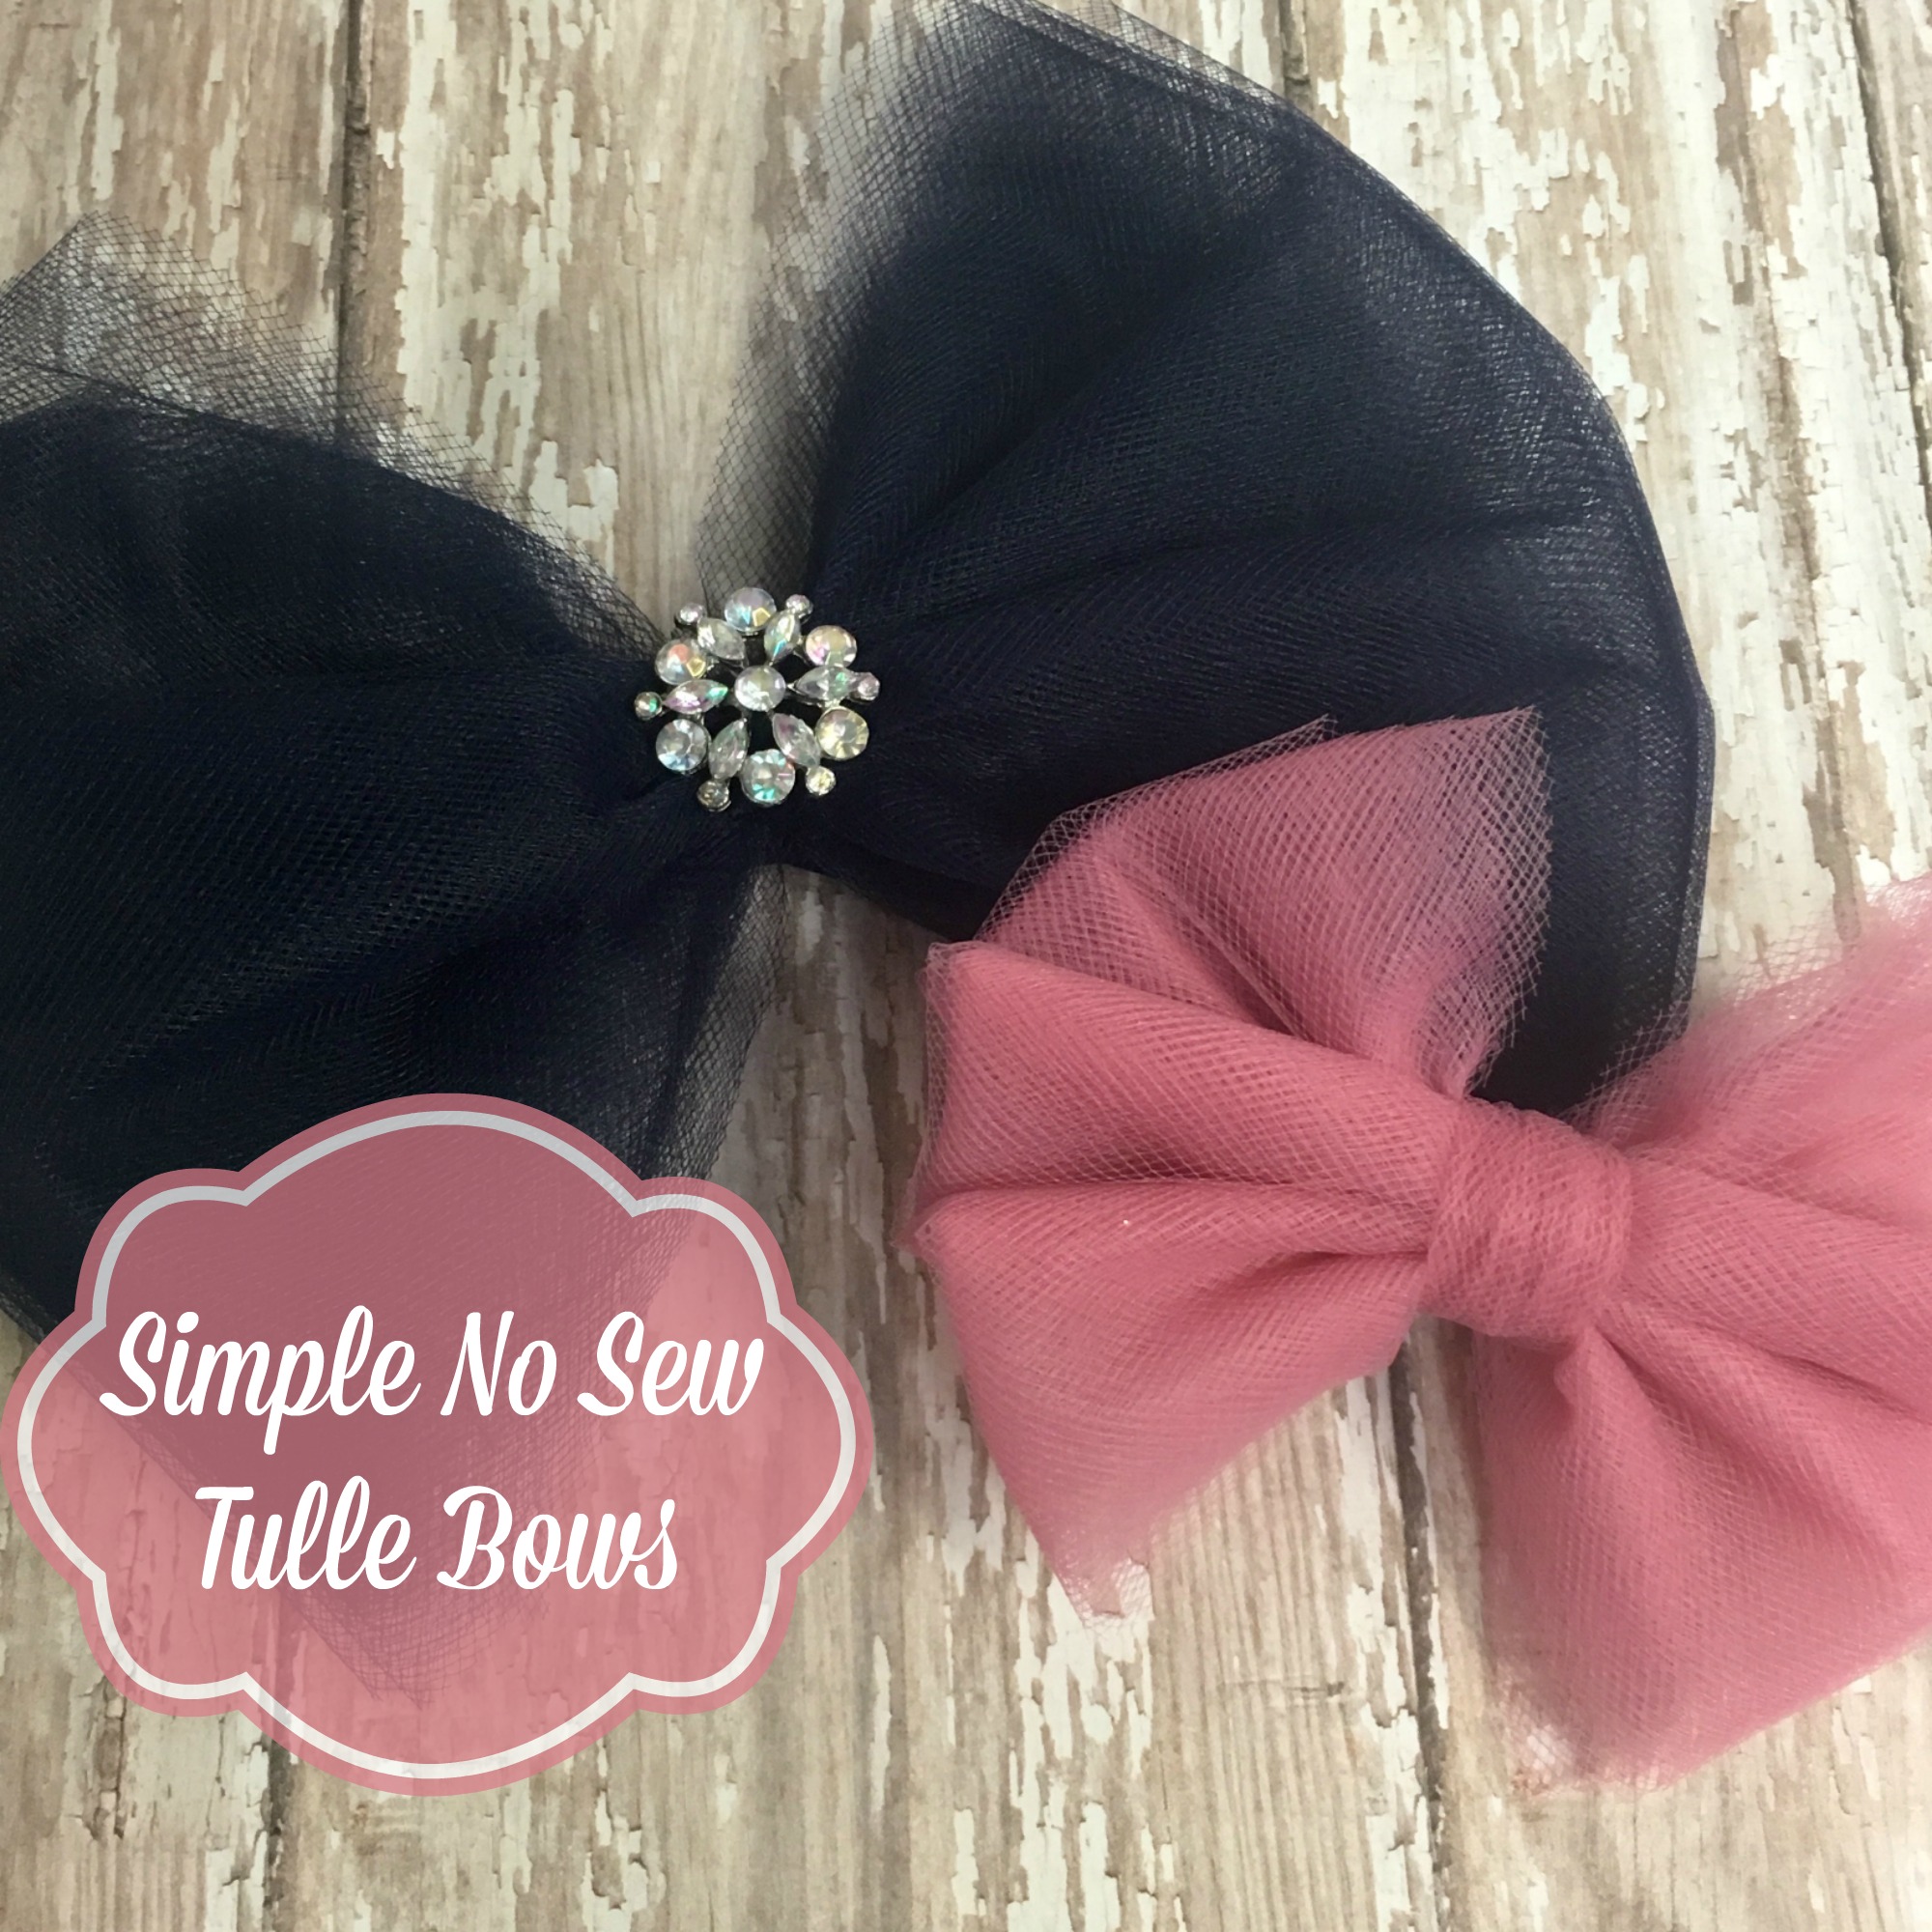 Tulle Hair Bows | The Hair Bow Company